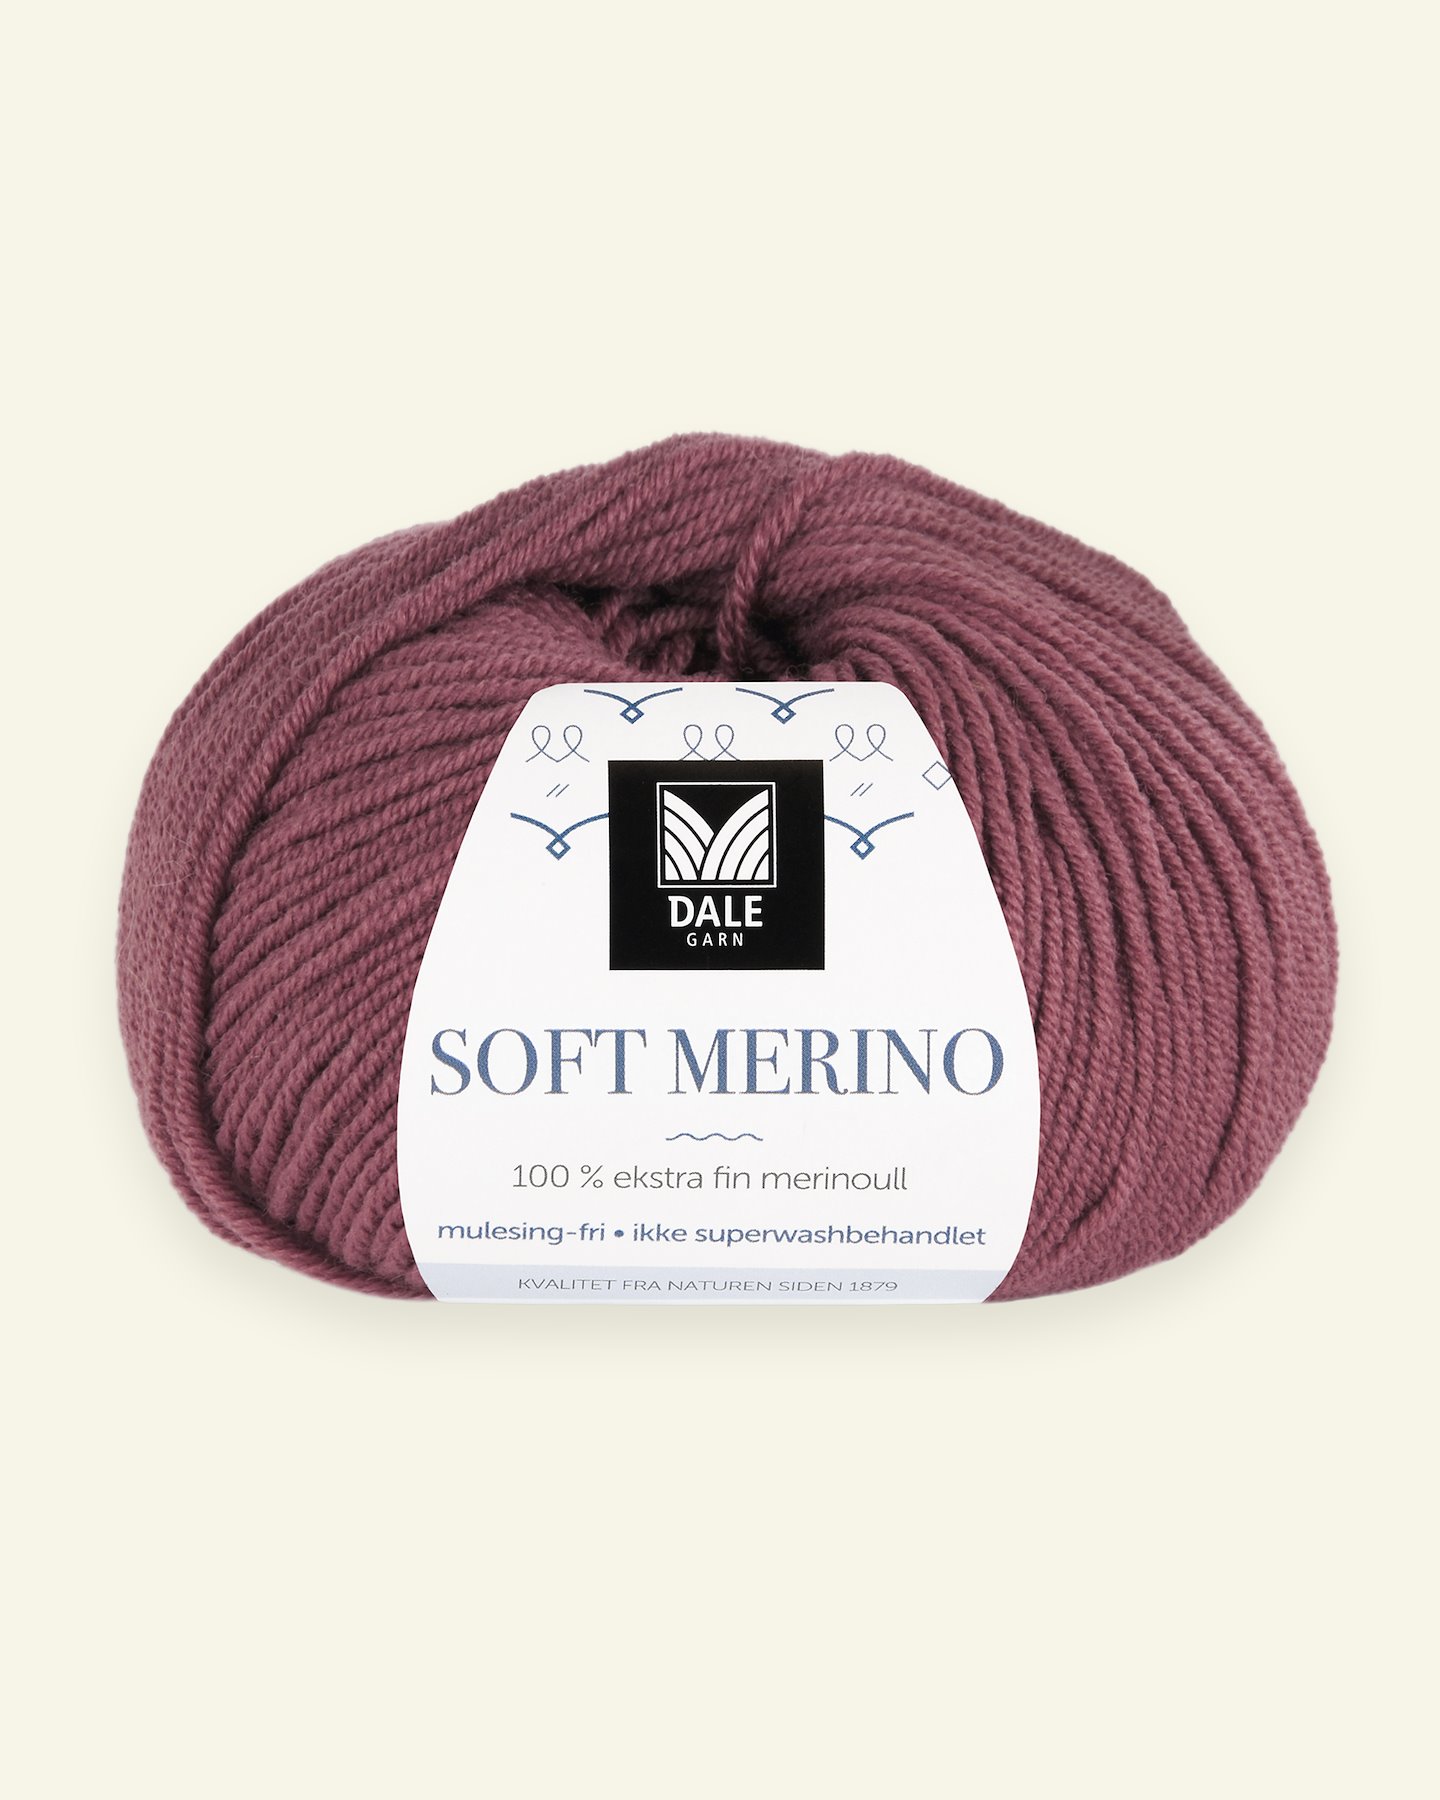 Dale Garn, 100% Extrafeine Merino-Wolle "Soft Merino", flieder (3017) 90000338_pack